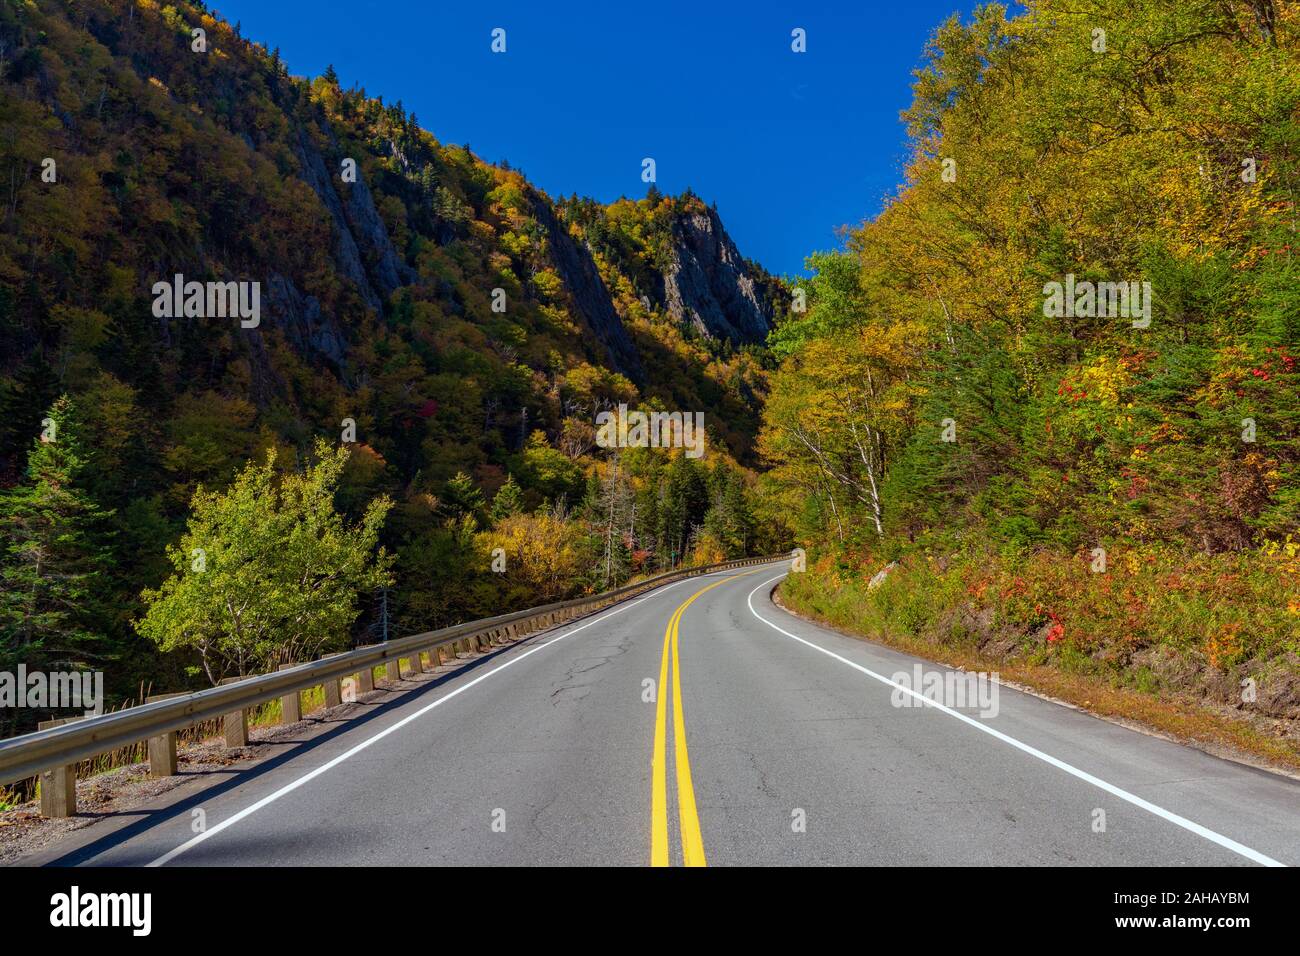 Eine Kurve in der Straße führt durch einen Pass von bunten Wald Anzeige lebendige Berg Farben umgeben. Stockfoto